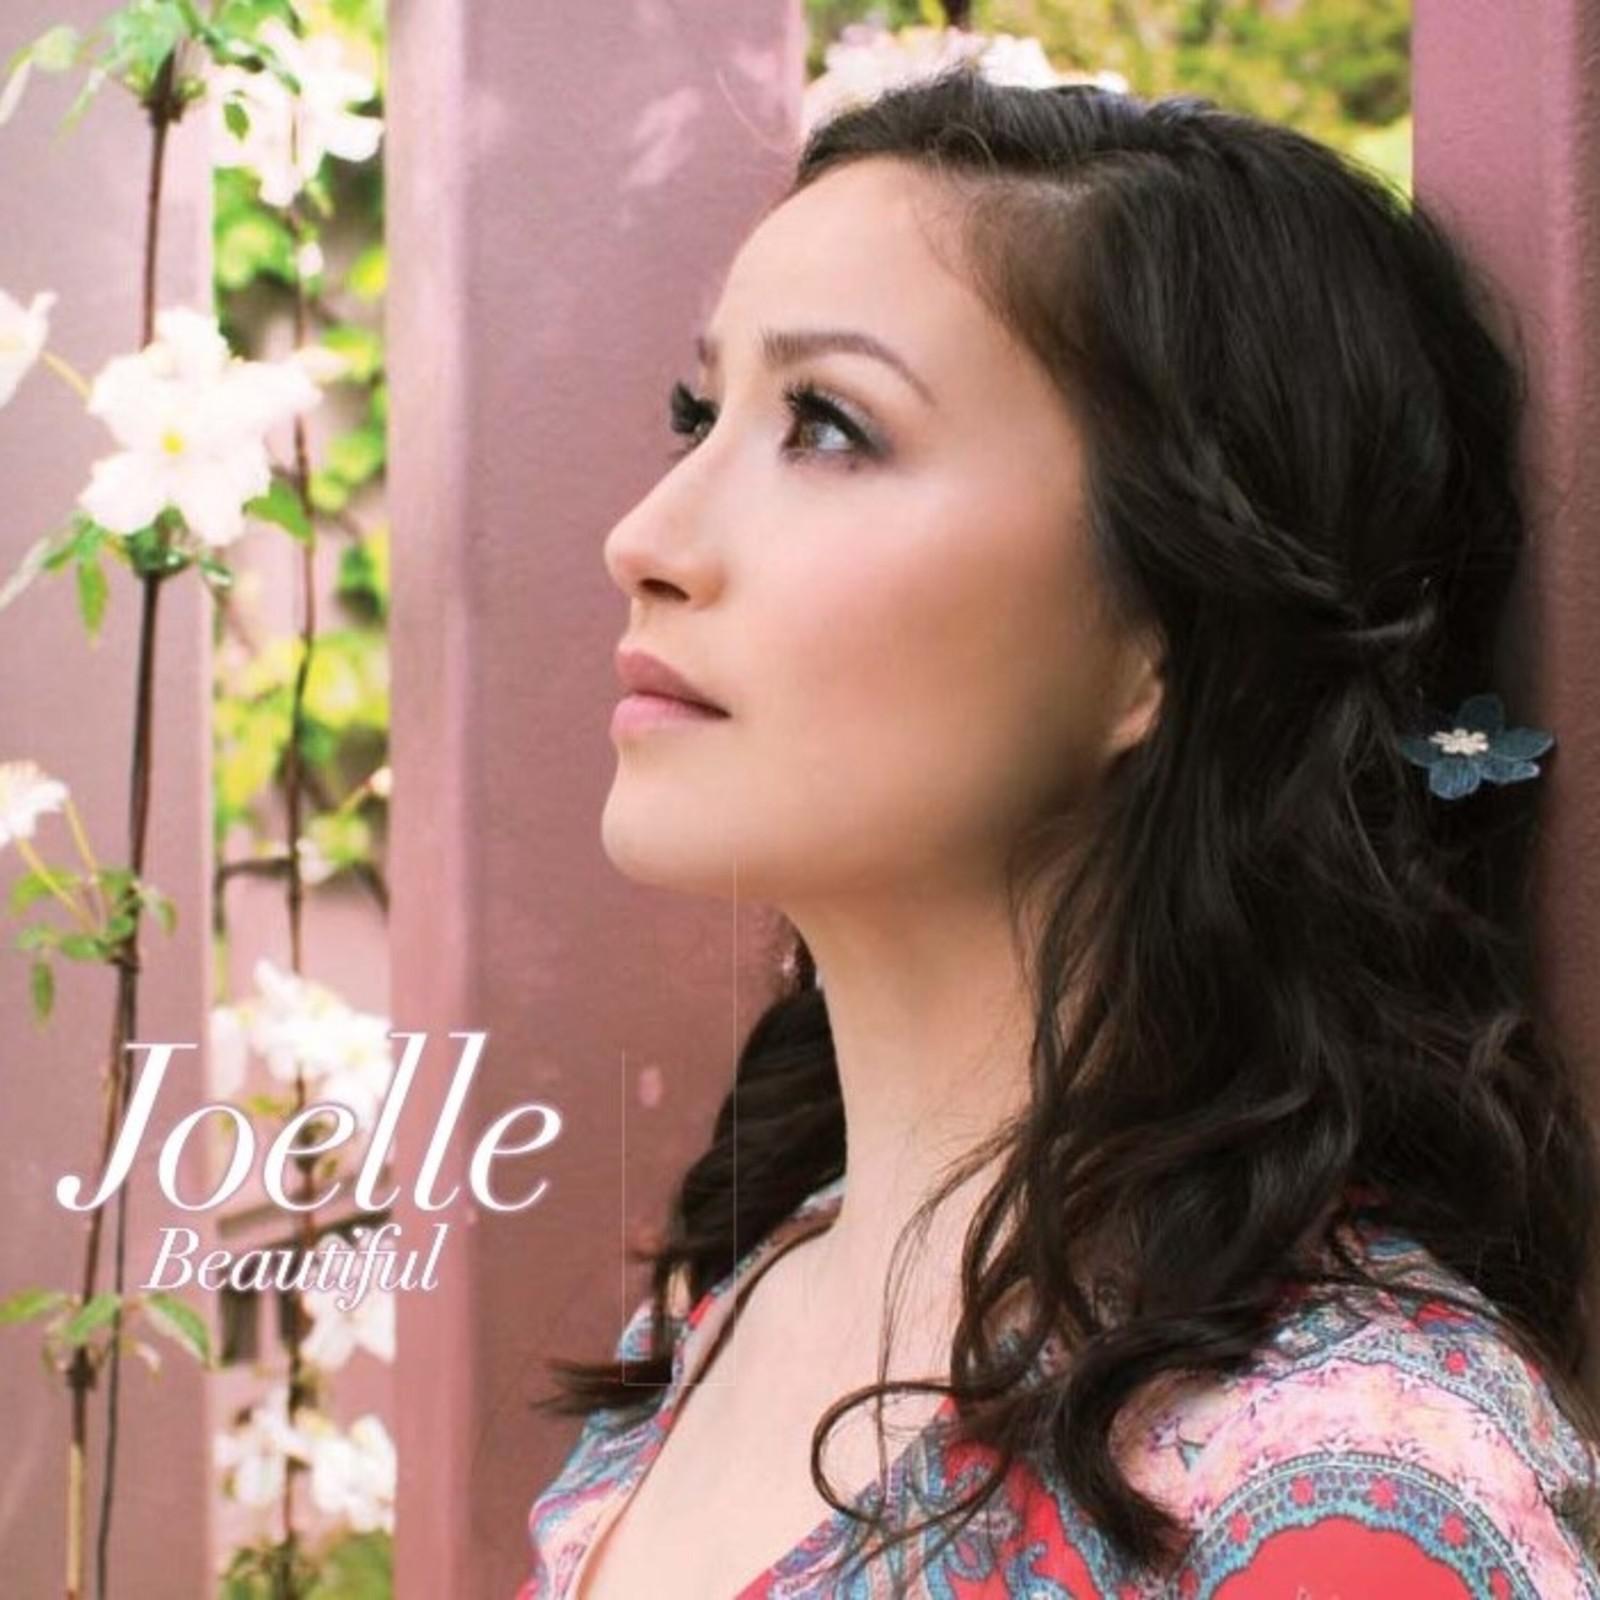 Joelle - Beautiful